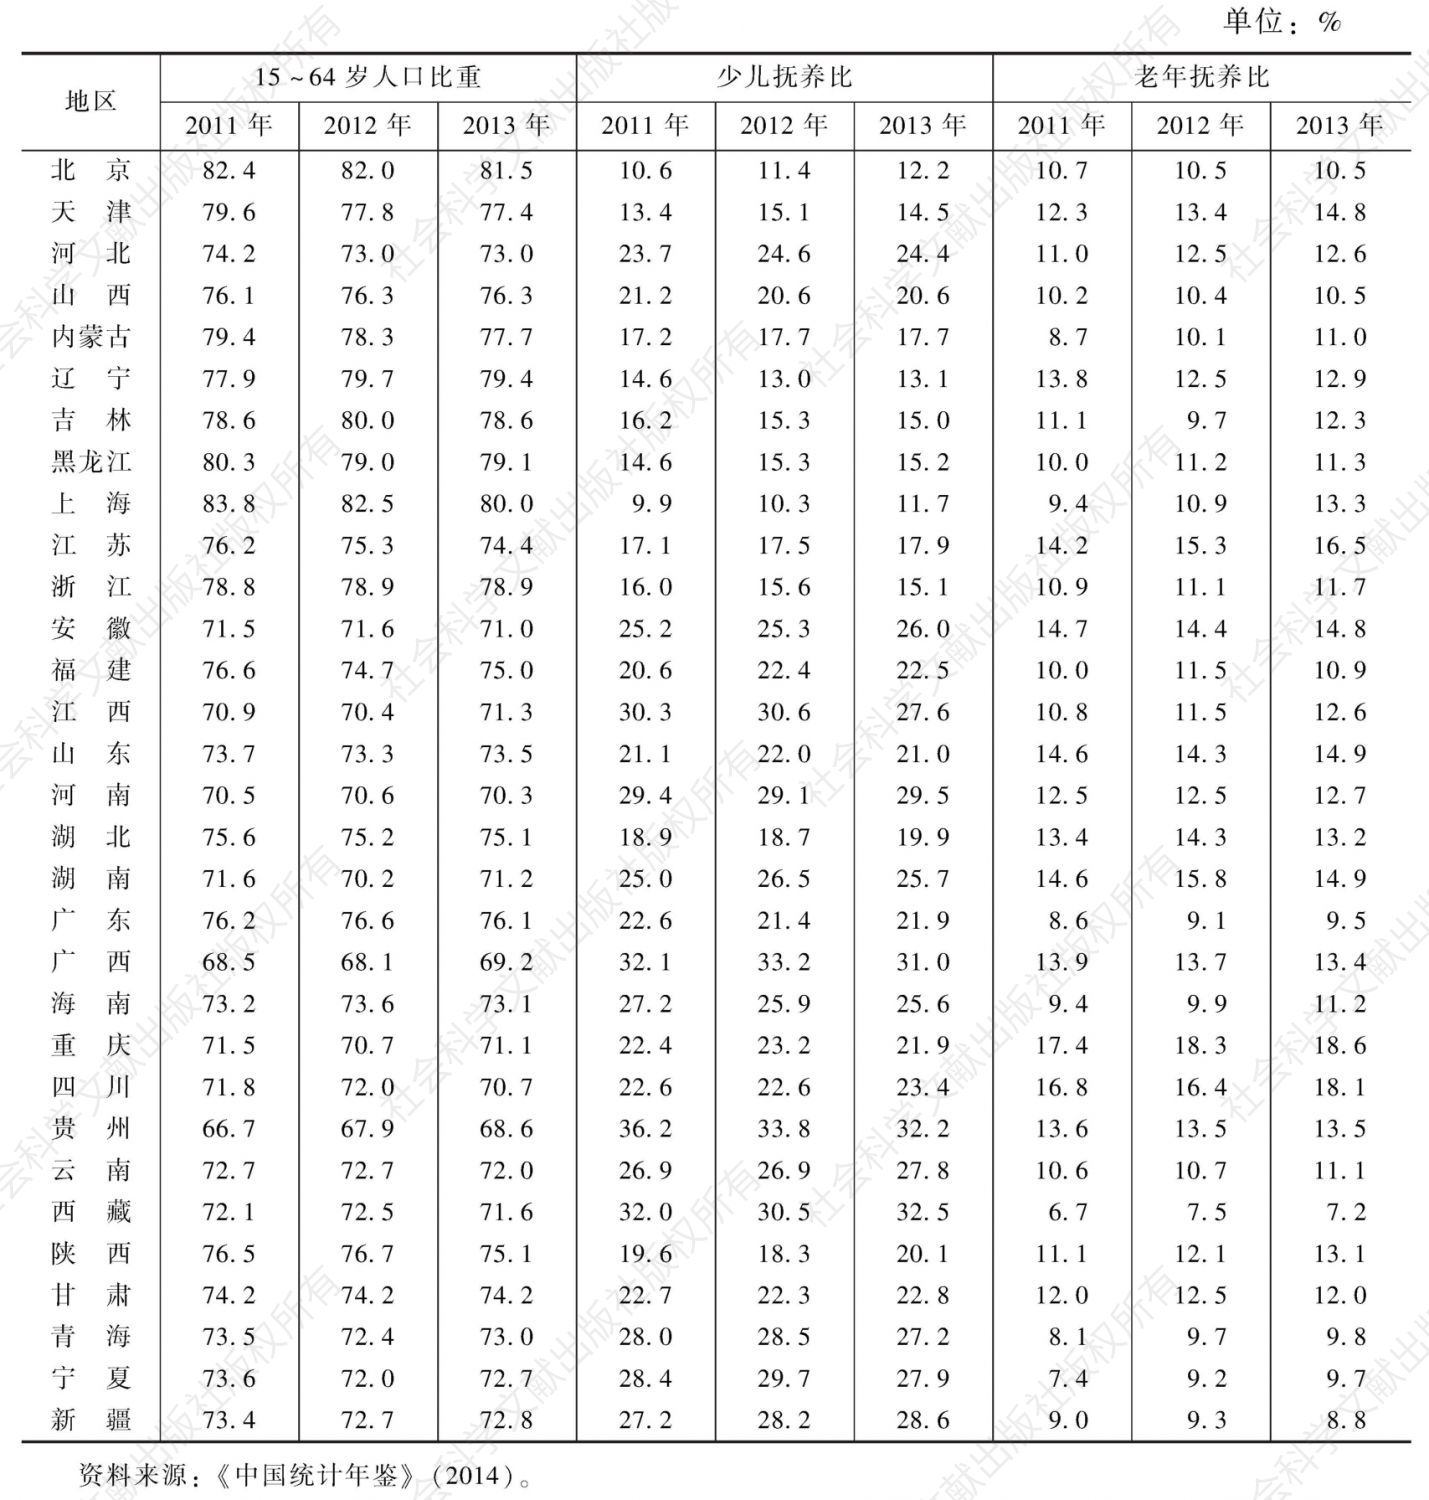 表5-2 中国省域人口年龄结构